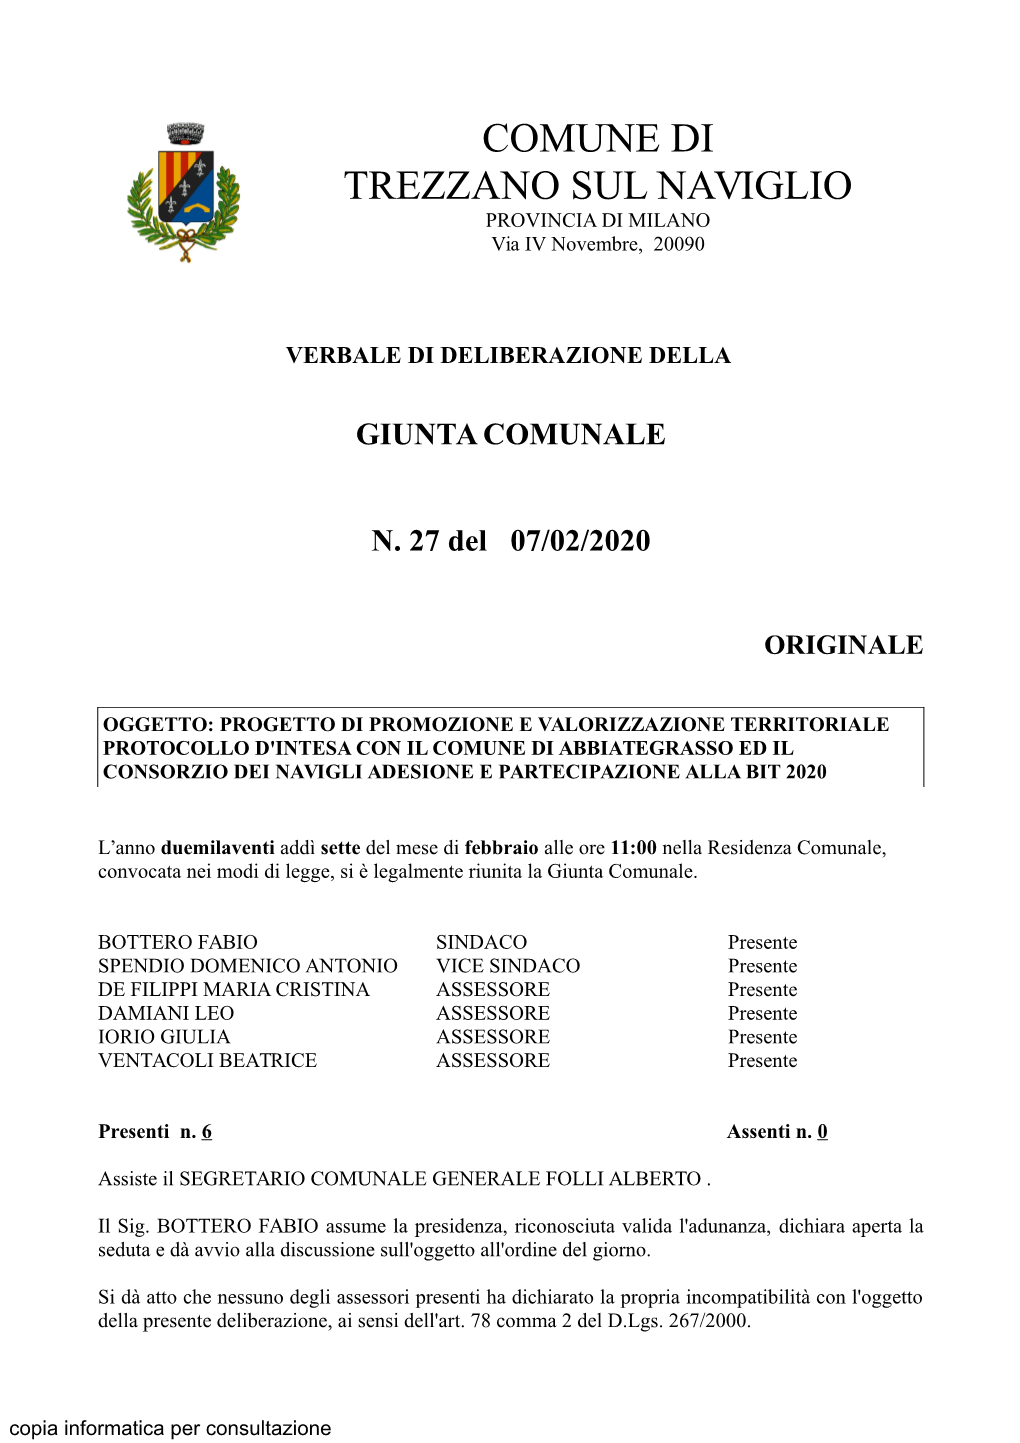 GIUNTA COMUNALE N. 27 Del 07/02/2020 ORIGINALE